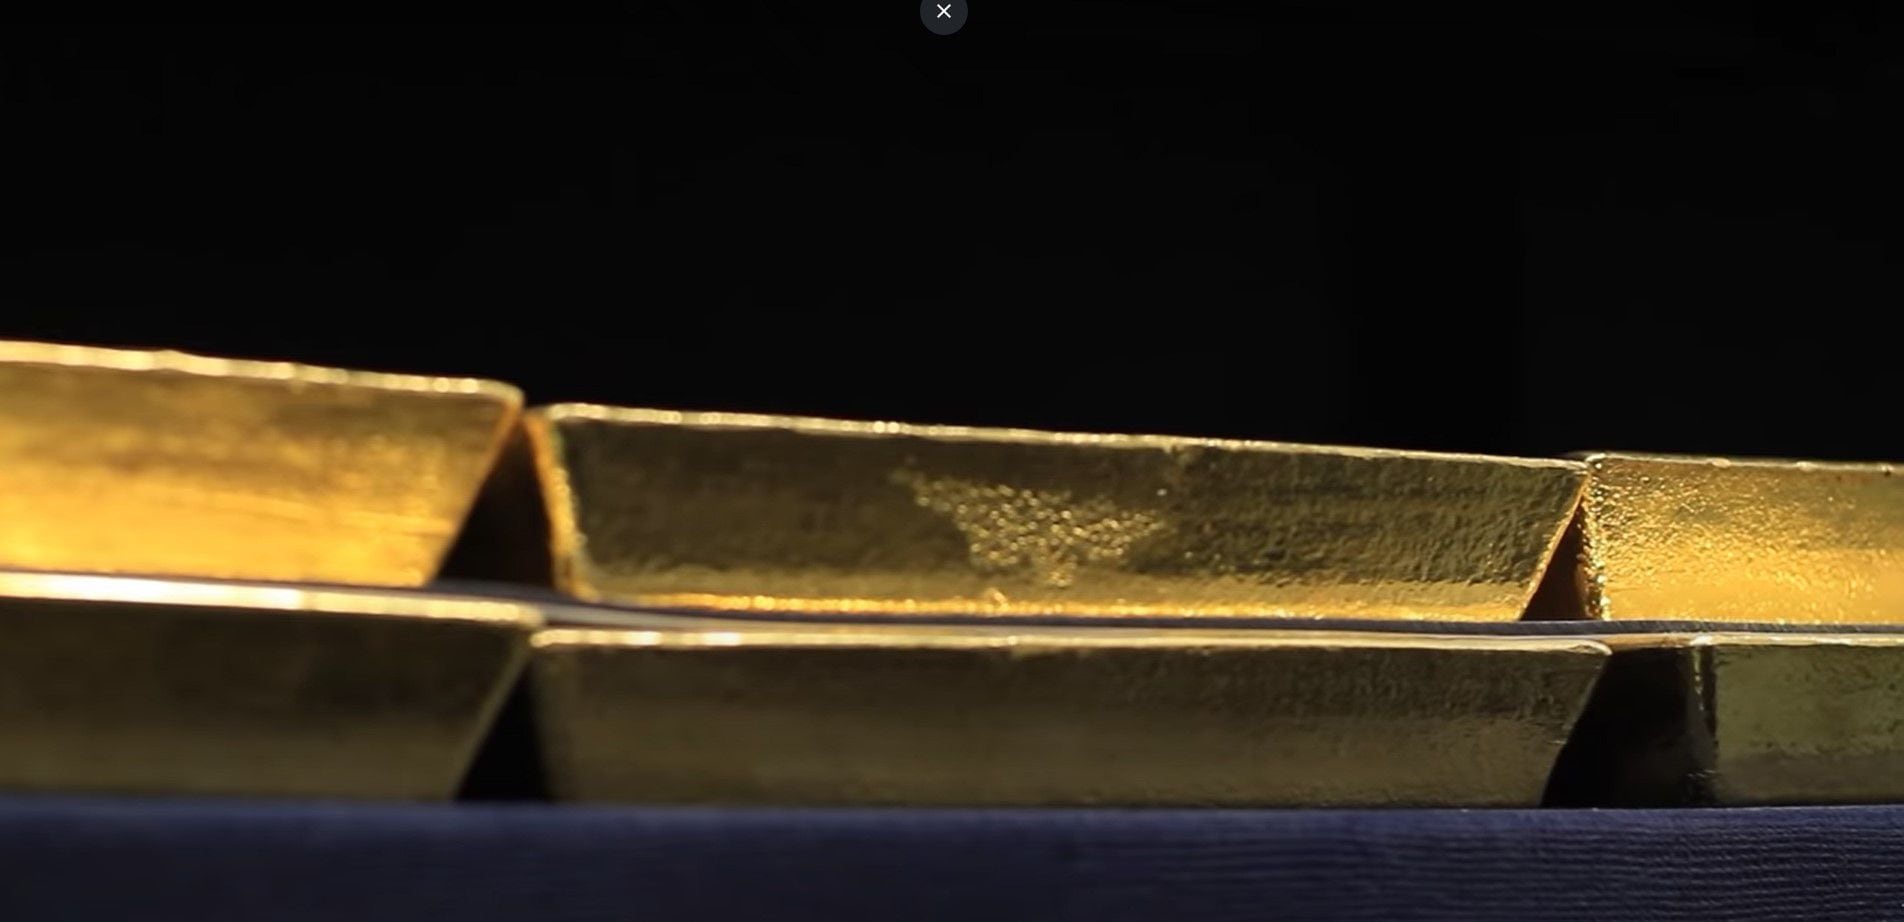 Rara vez el Banco Central permite salir imágenes de los pocos lingotes de oro presentes en su bóveda. Esta es una captura de una publicación del año 2015 todavía disponible en su cuenta de Youtube (@BancoCentral_AR)